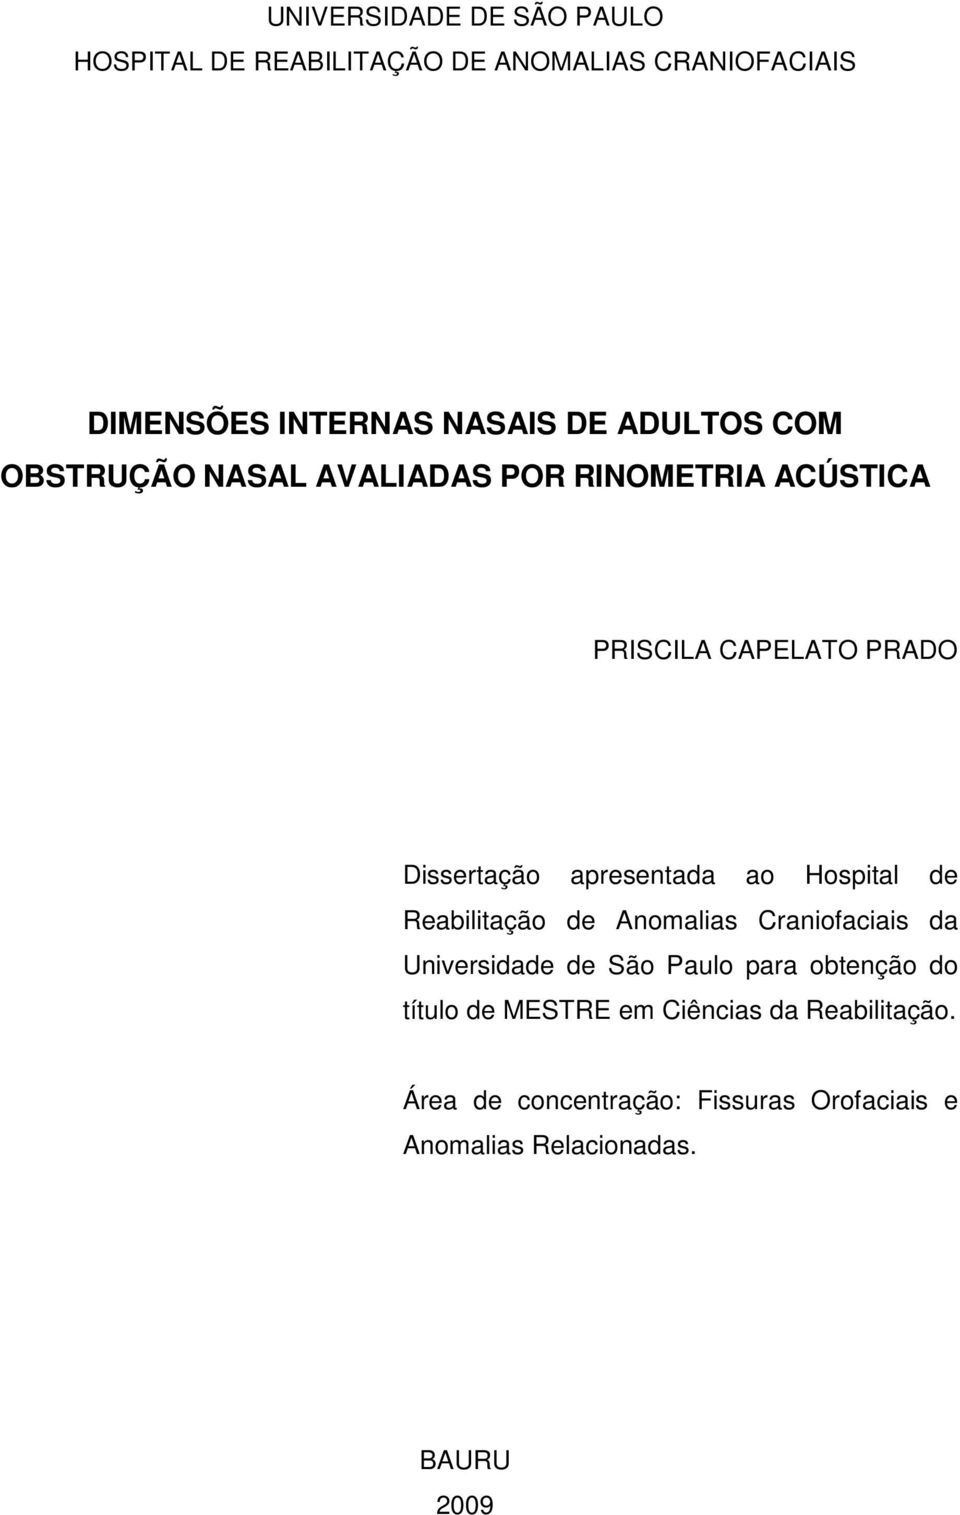 ao Hospital de Reabilitação de Anomalias Craniofaciais da Universidade de São Paulo para obtenção do título de